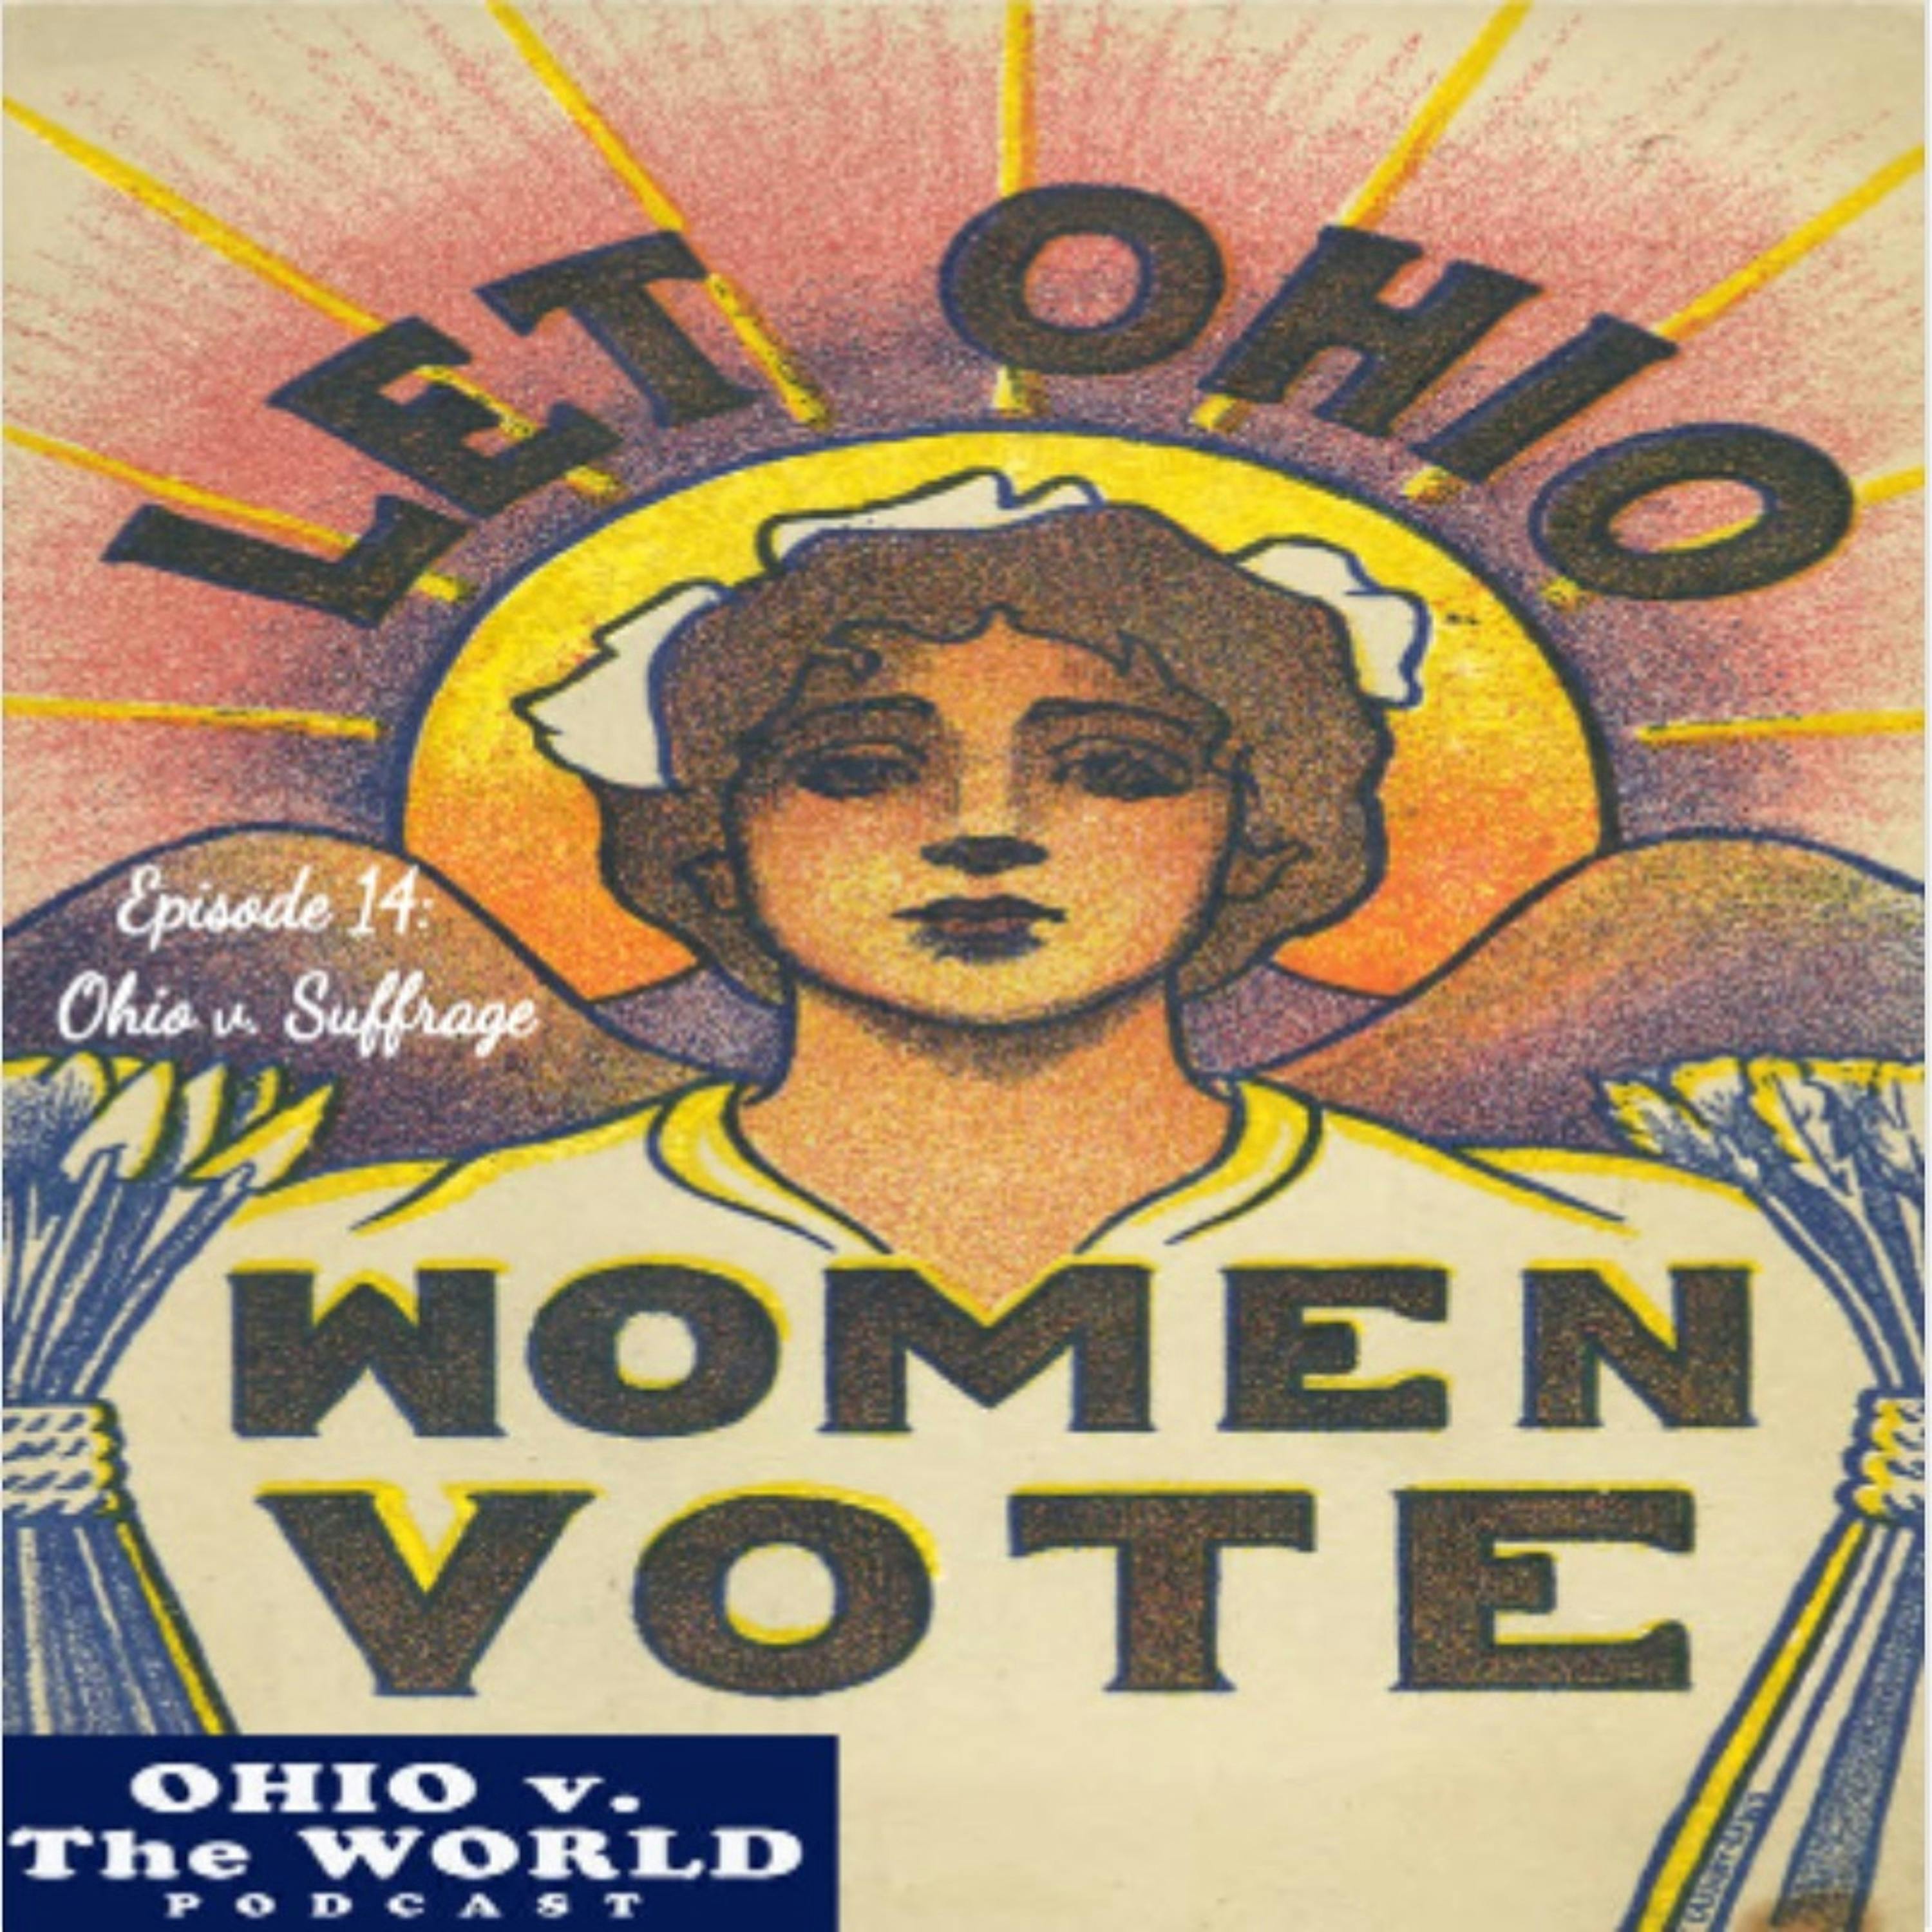 Episode 14: Ohio v. Suffrage (19th Amendment)